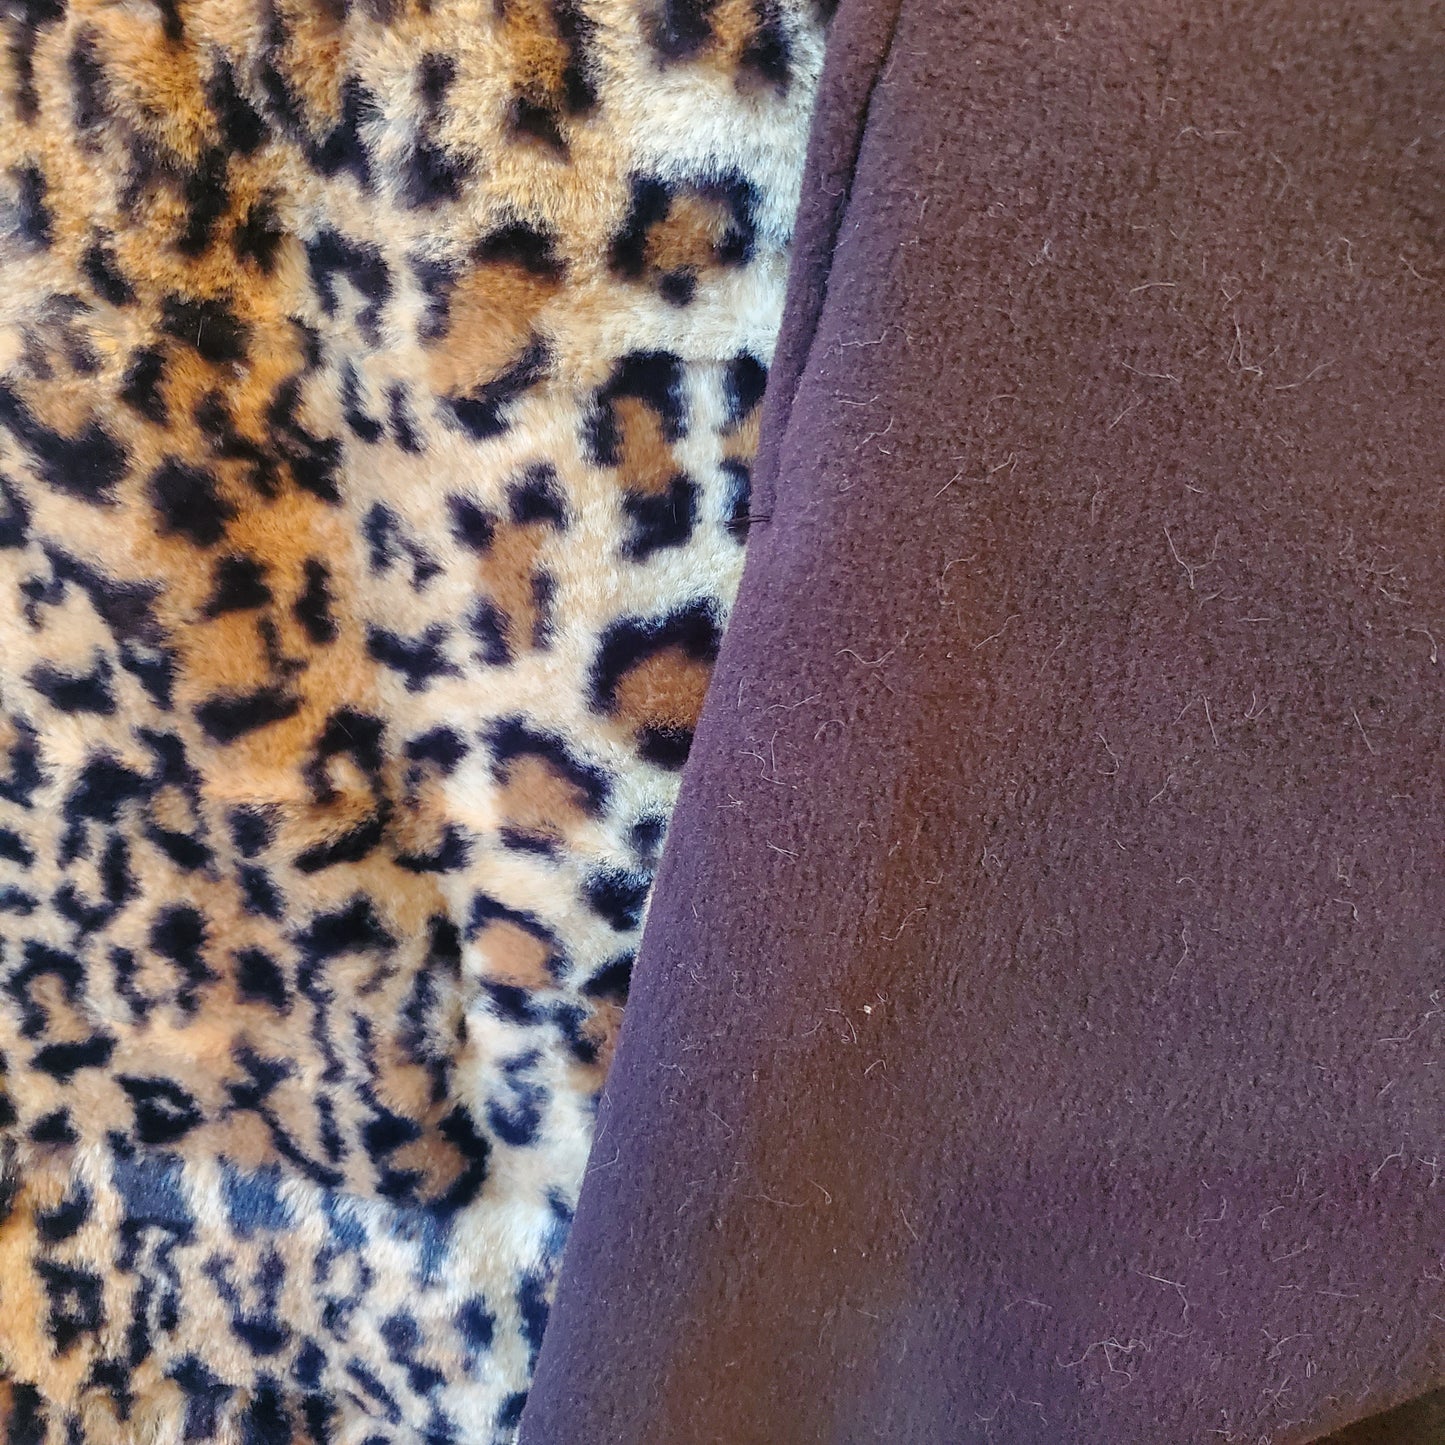 Leopard Fuzzy Lap Blanket